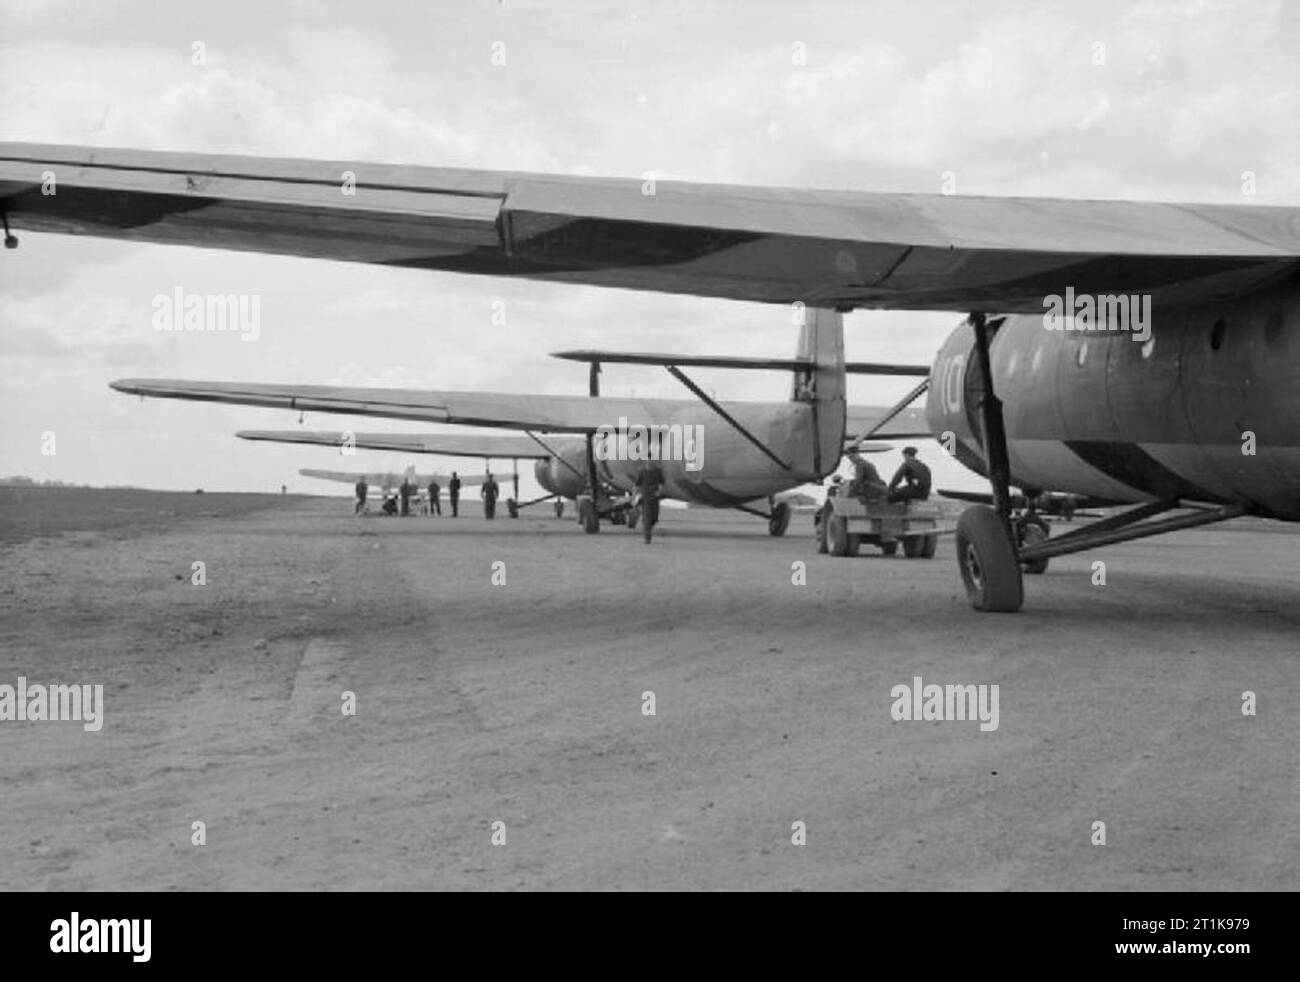 Royal Air Force Commande d'entraînement en vol, 1940-1945. Horsa Airspeed marque est de l'unité de conversion de planeur lourd, alignés sur la piste à Brize Norton, Oxfordshire, attendant d'être remorqué. Le câble de remorquage de l'Armstrong Whitworth Whitley remorqueur cible vu au-delà du groupe d'aviateurs dans la distance, a été attaché à l'avant-aile. Banque D'Images